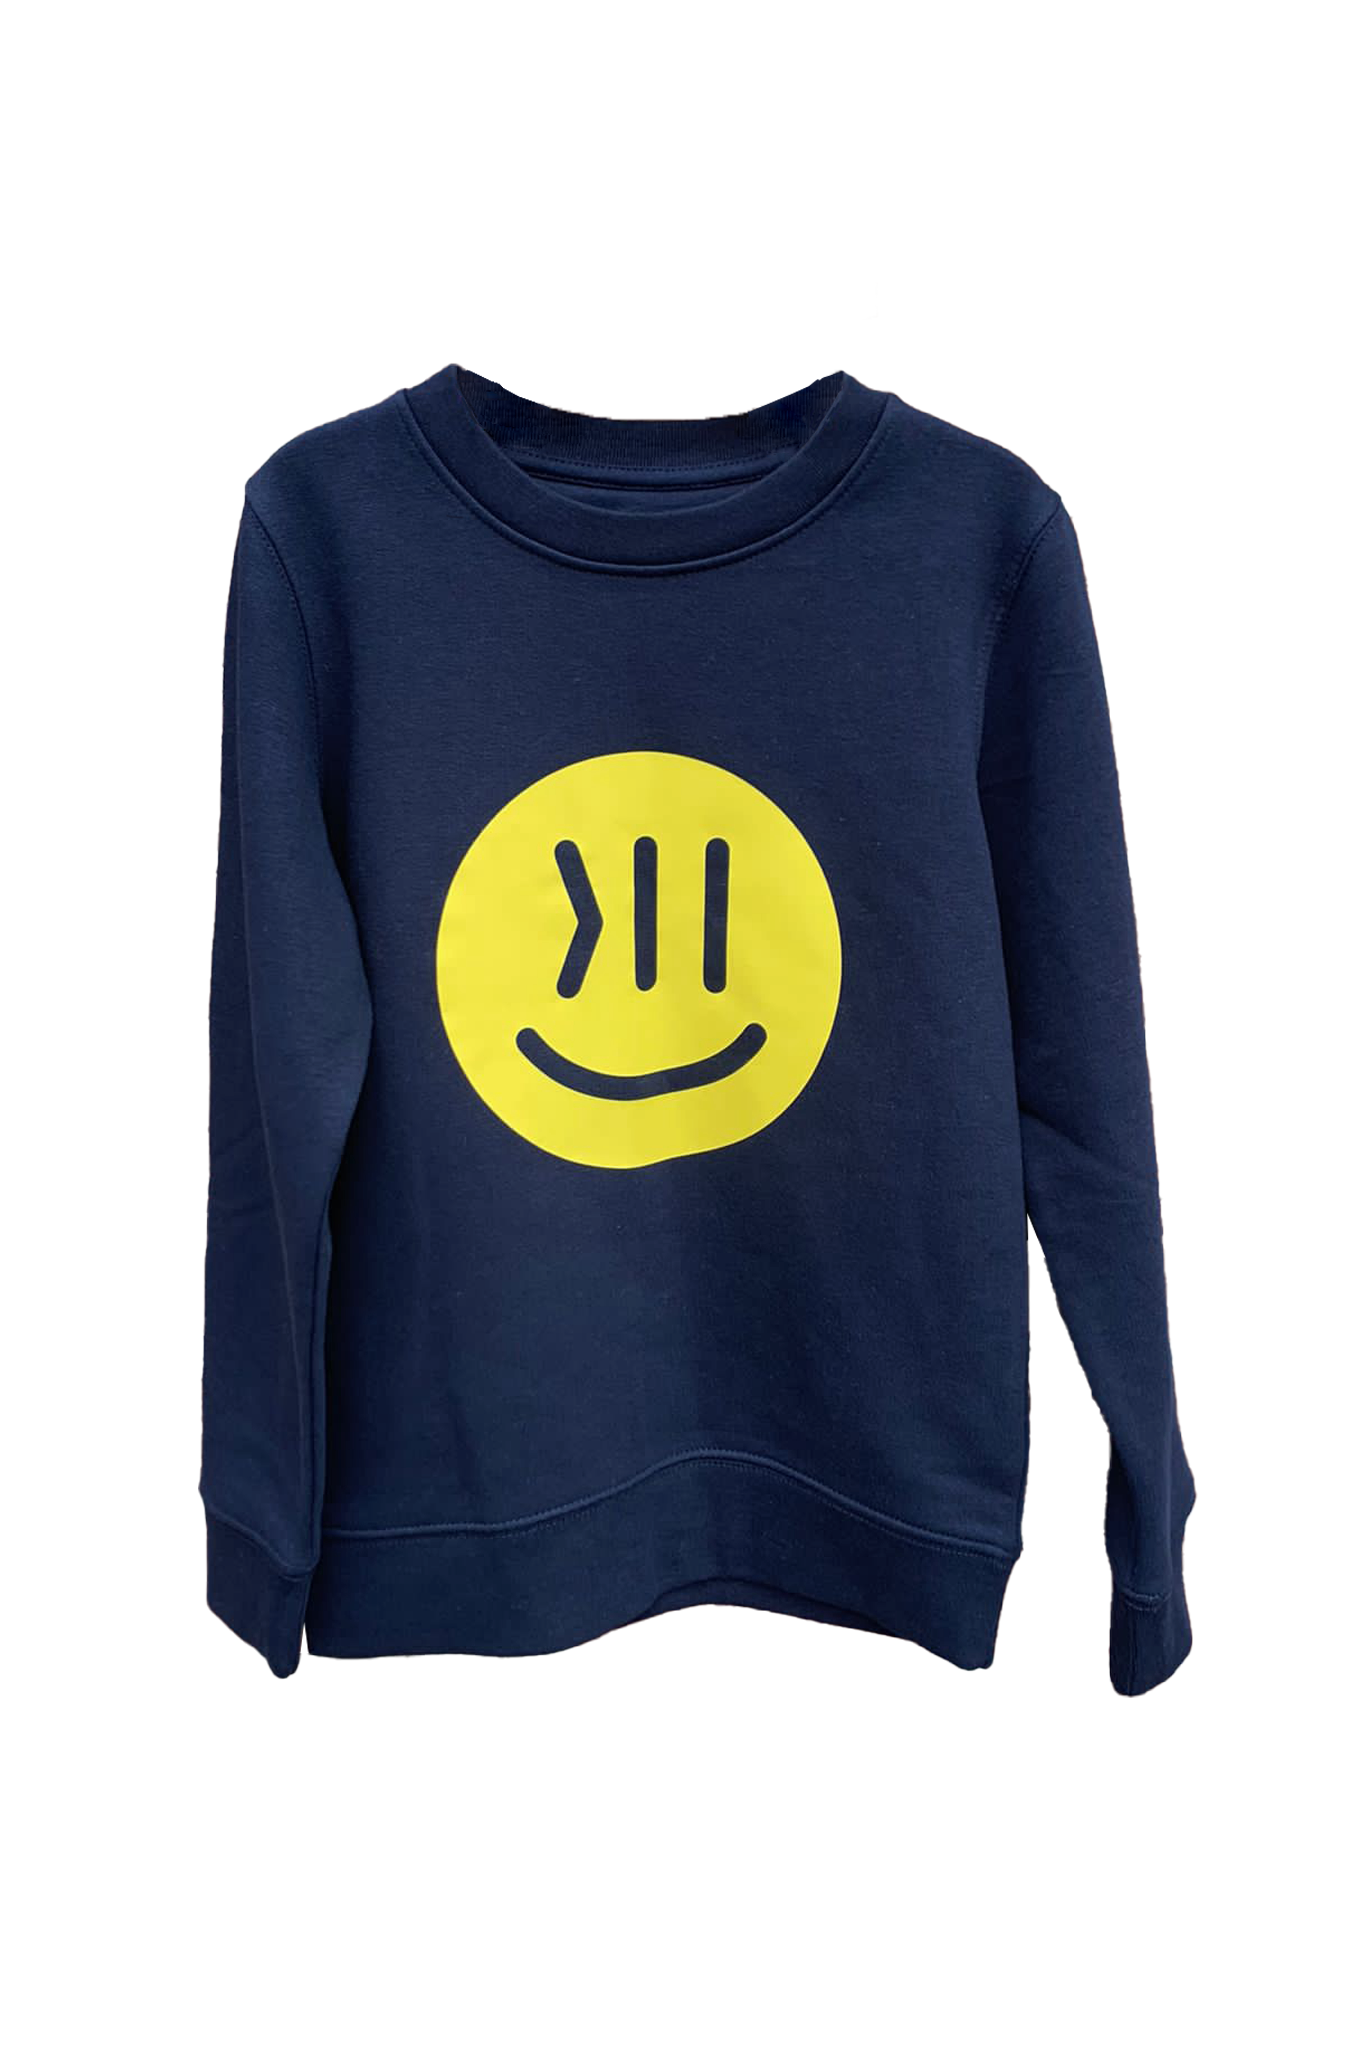 Ein Sweatshirt für Kinder in einem dunklen Blauton. Der Sweater heißt Elia.  Auf der Brust ist der isociety Smiley in ca. 18 cm Durchmesser zu sehen. 